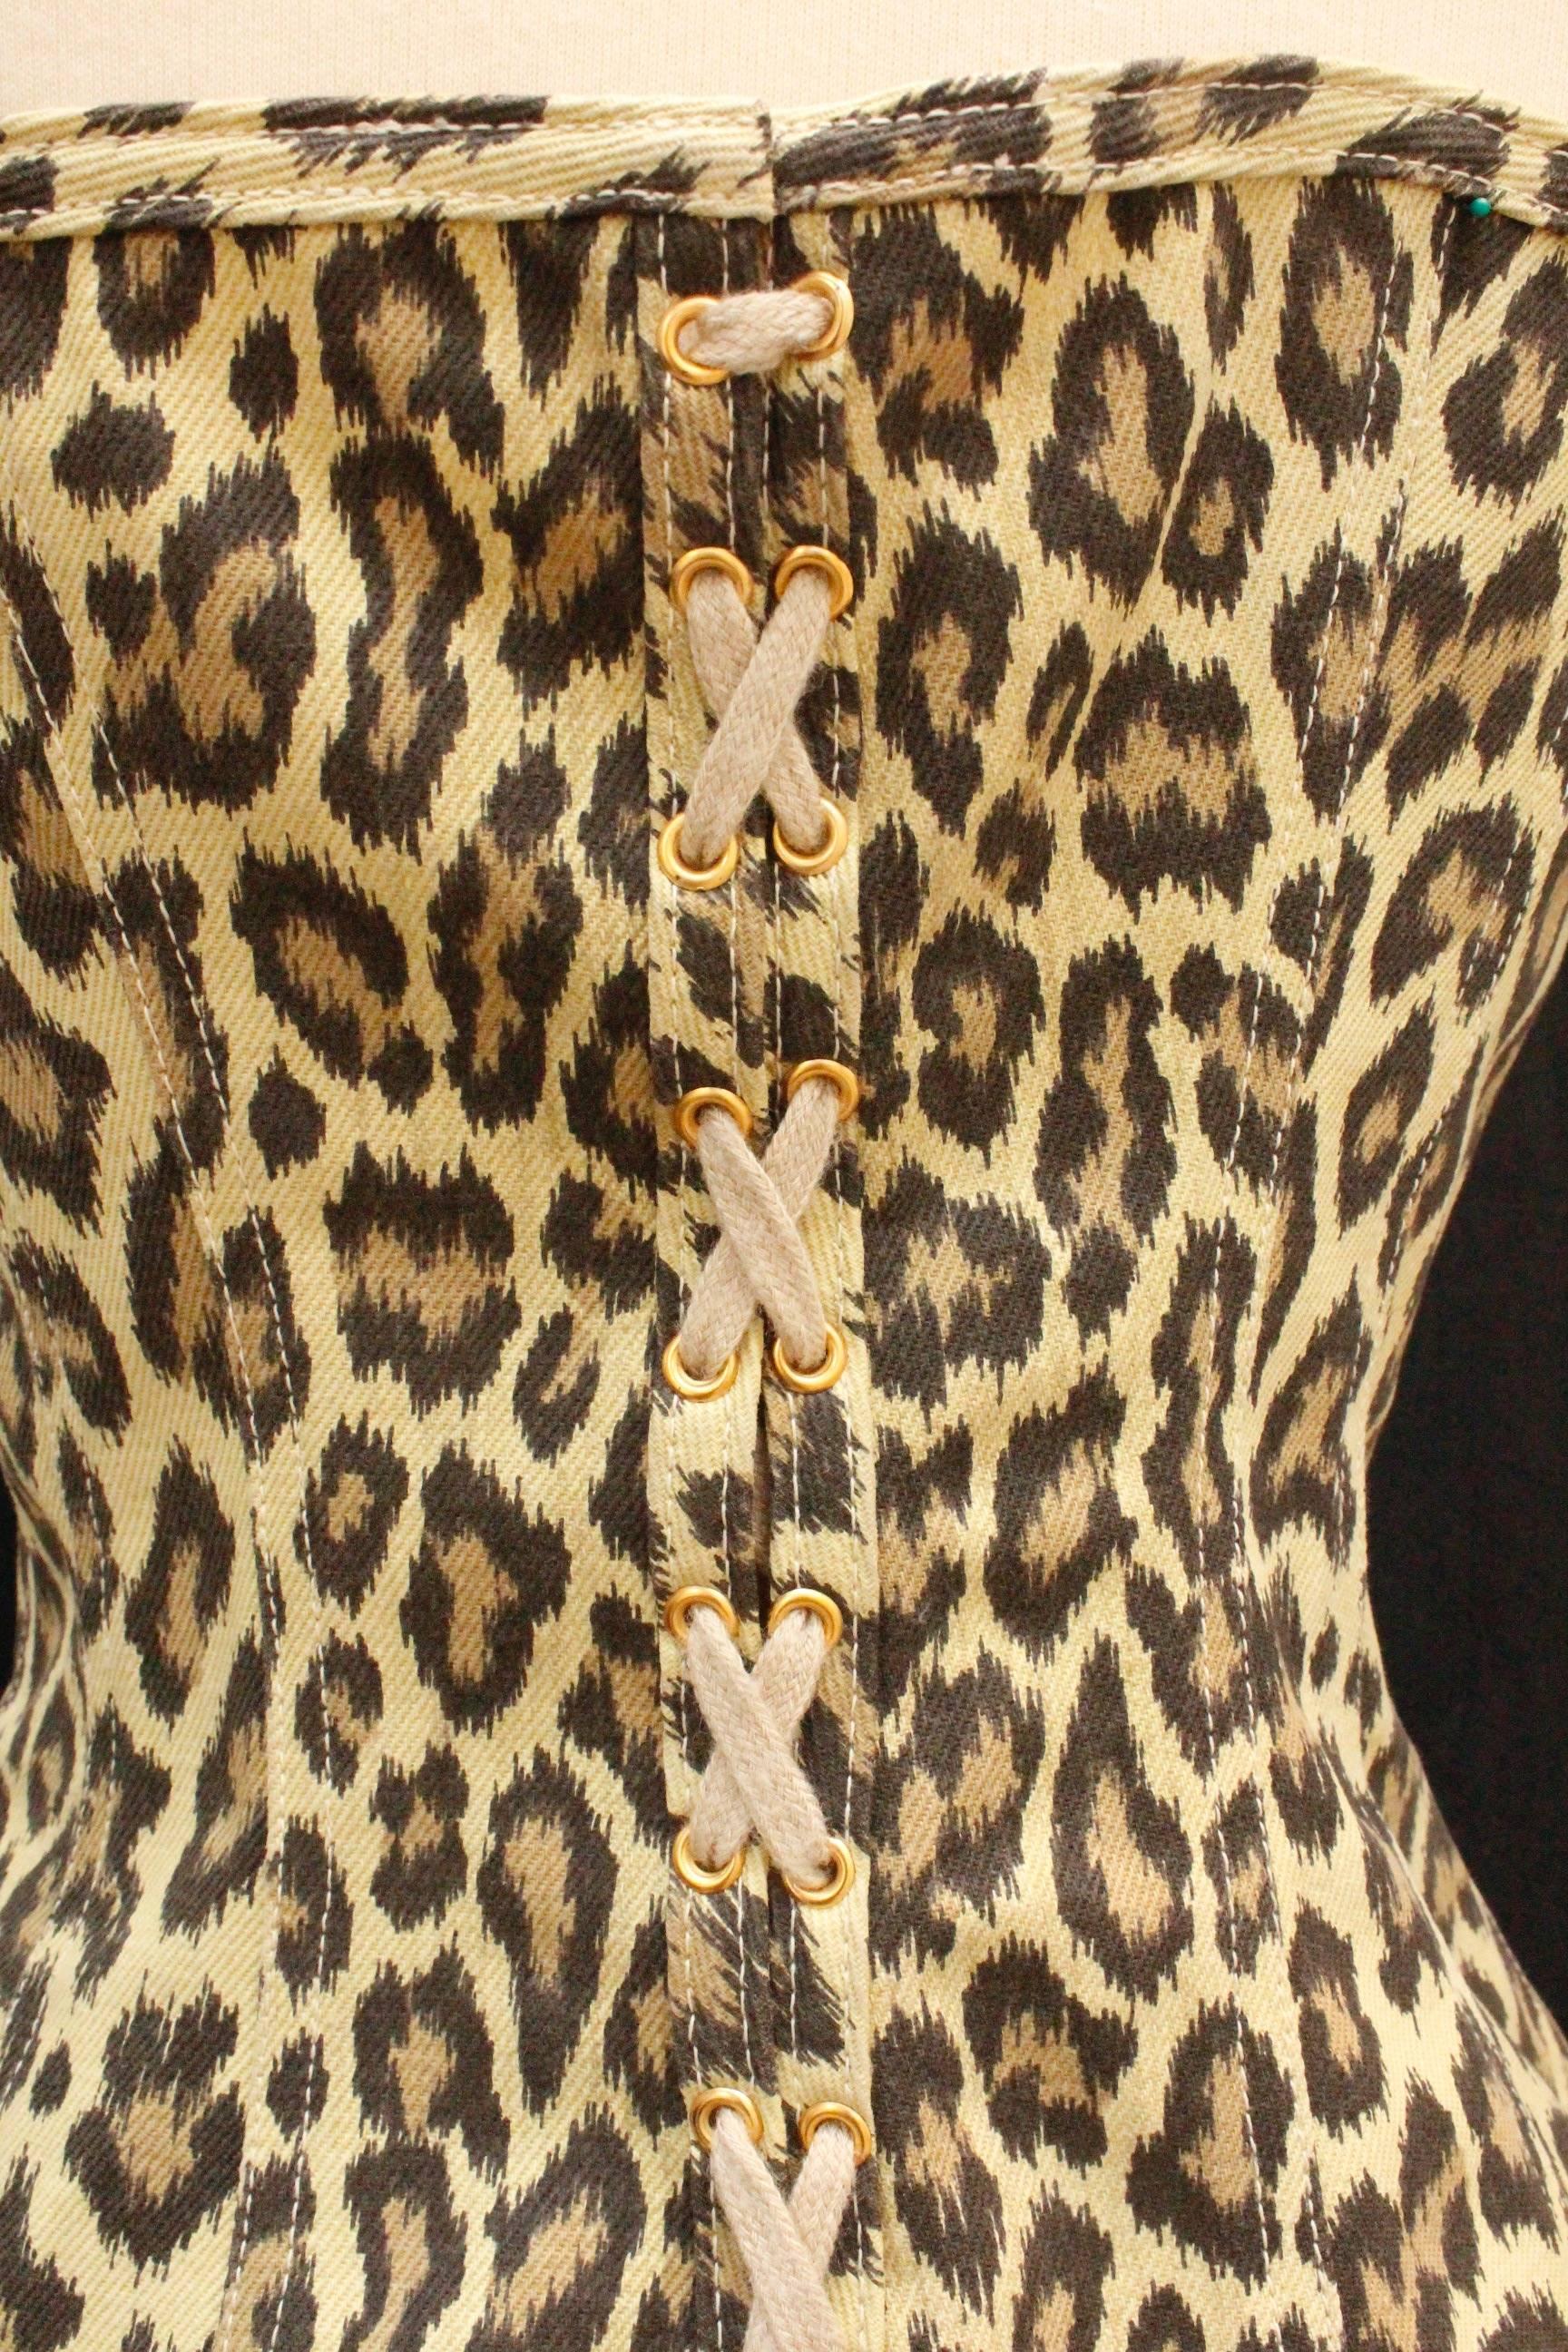 Women's 1990s Jean-Paul Gaultier leopard print bustier